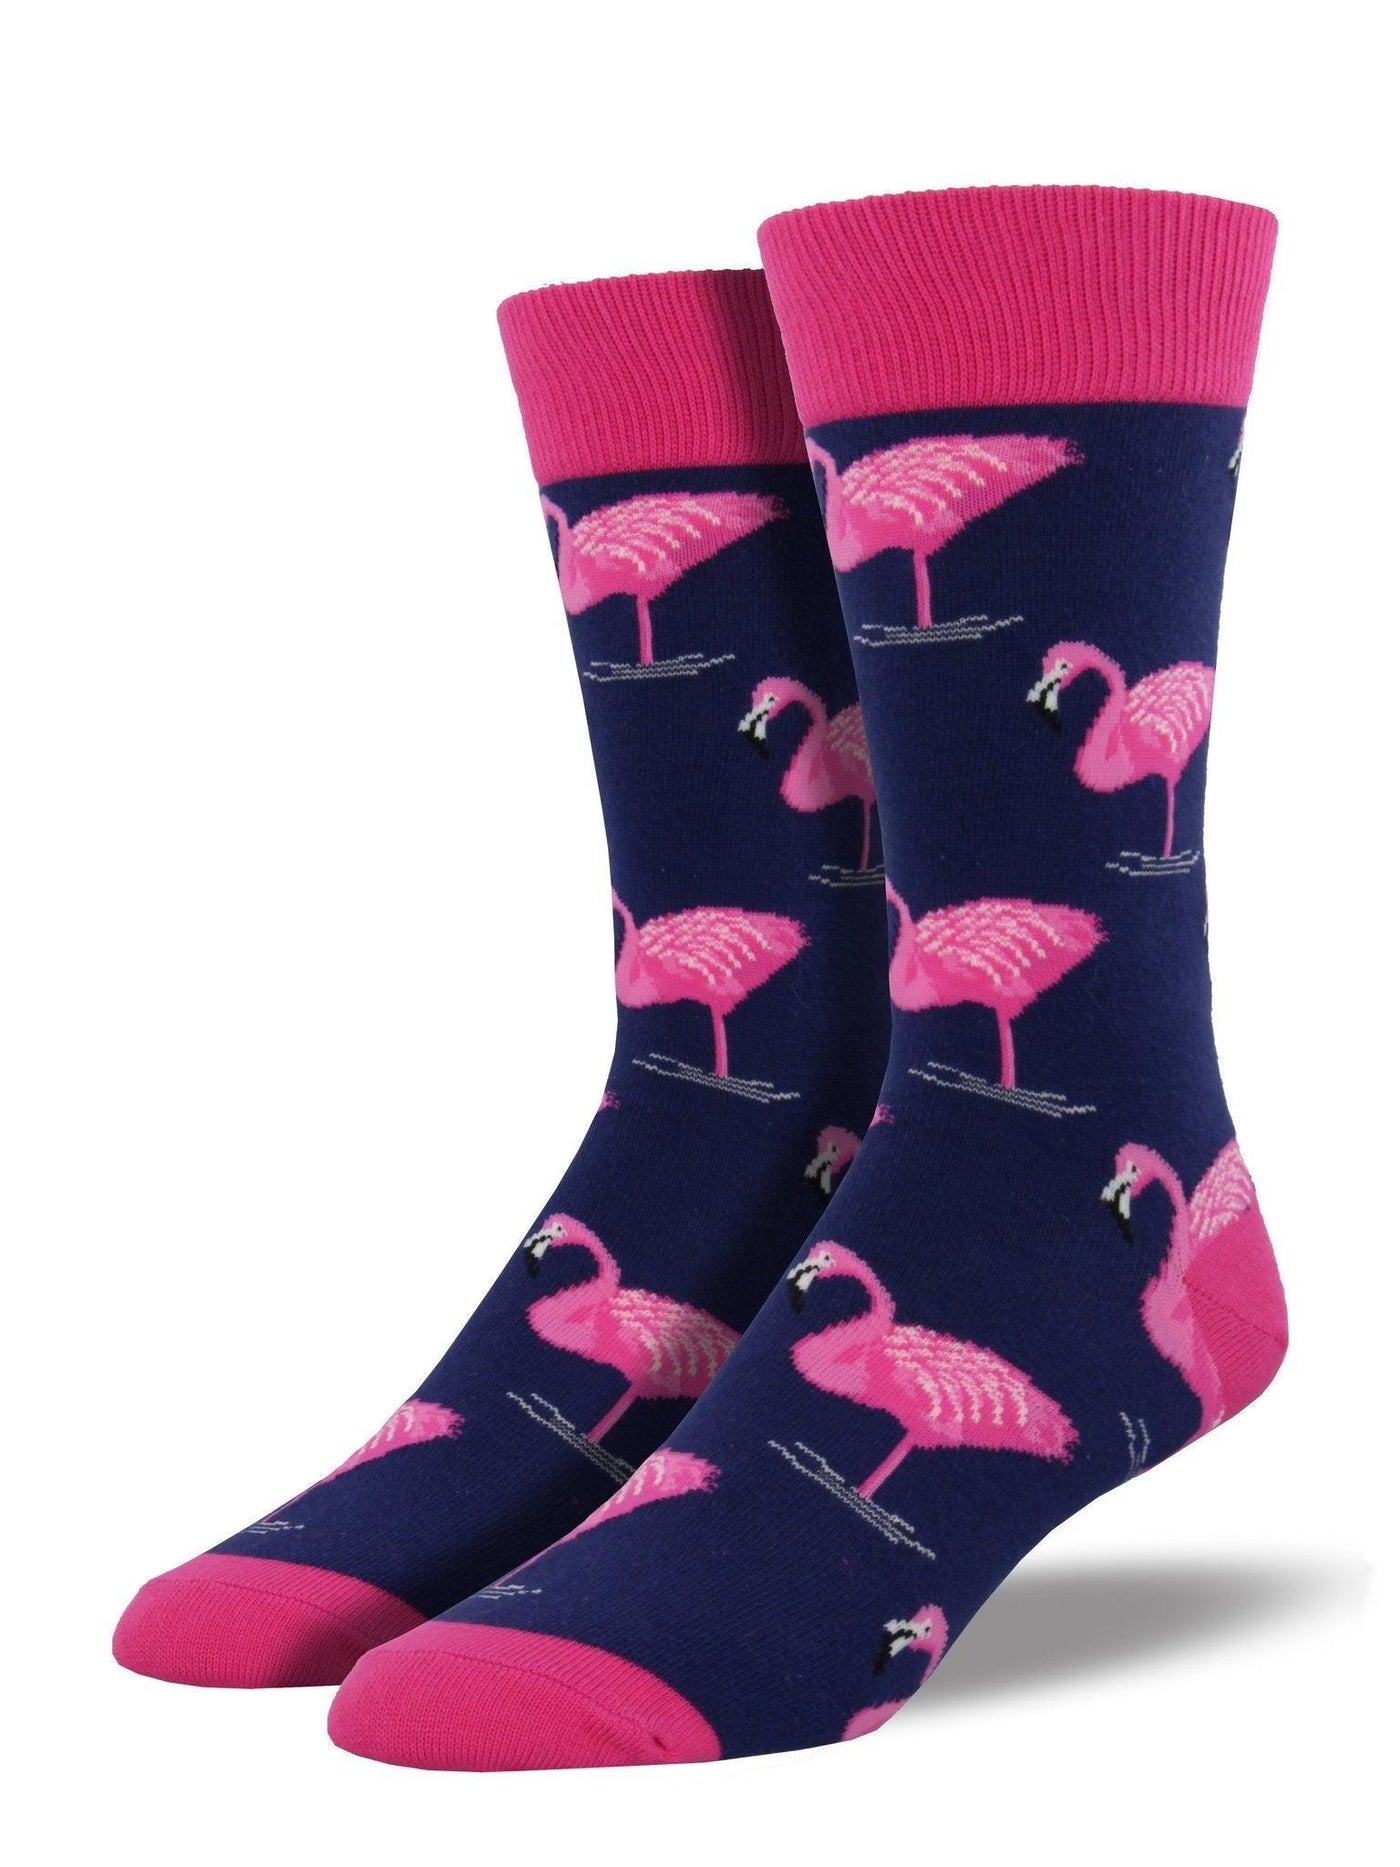 Flamingo, Men's Crew - Socksmith - The Sock Monster